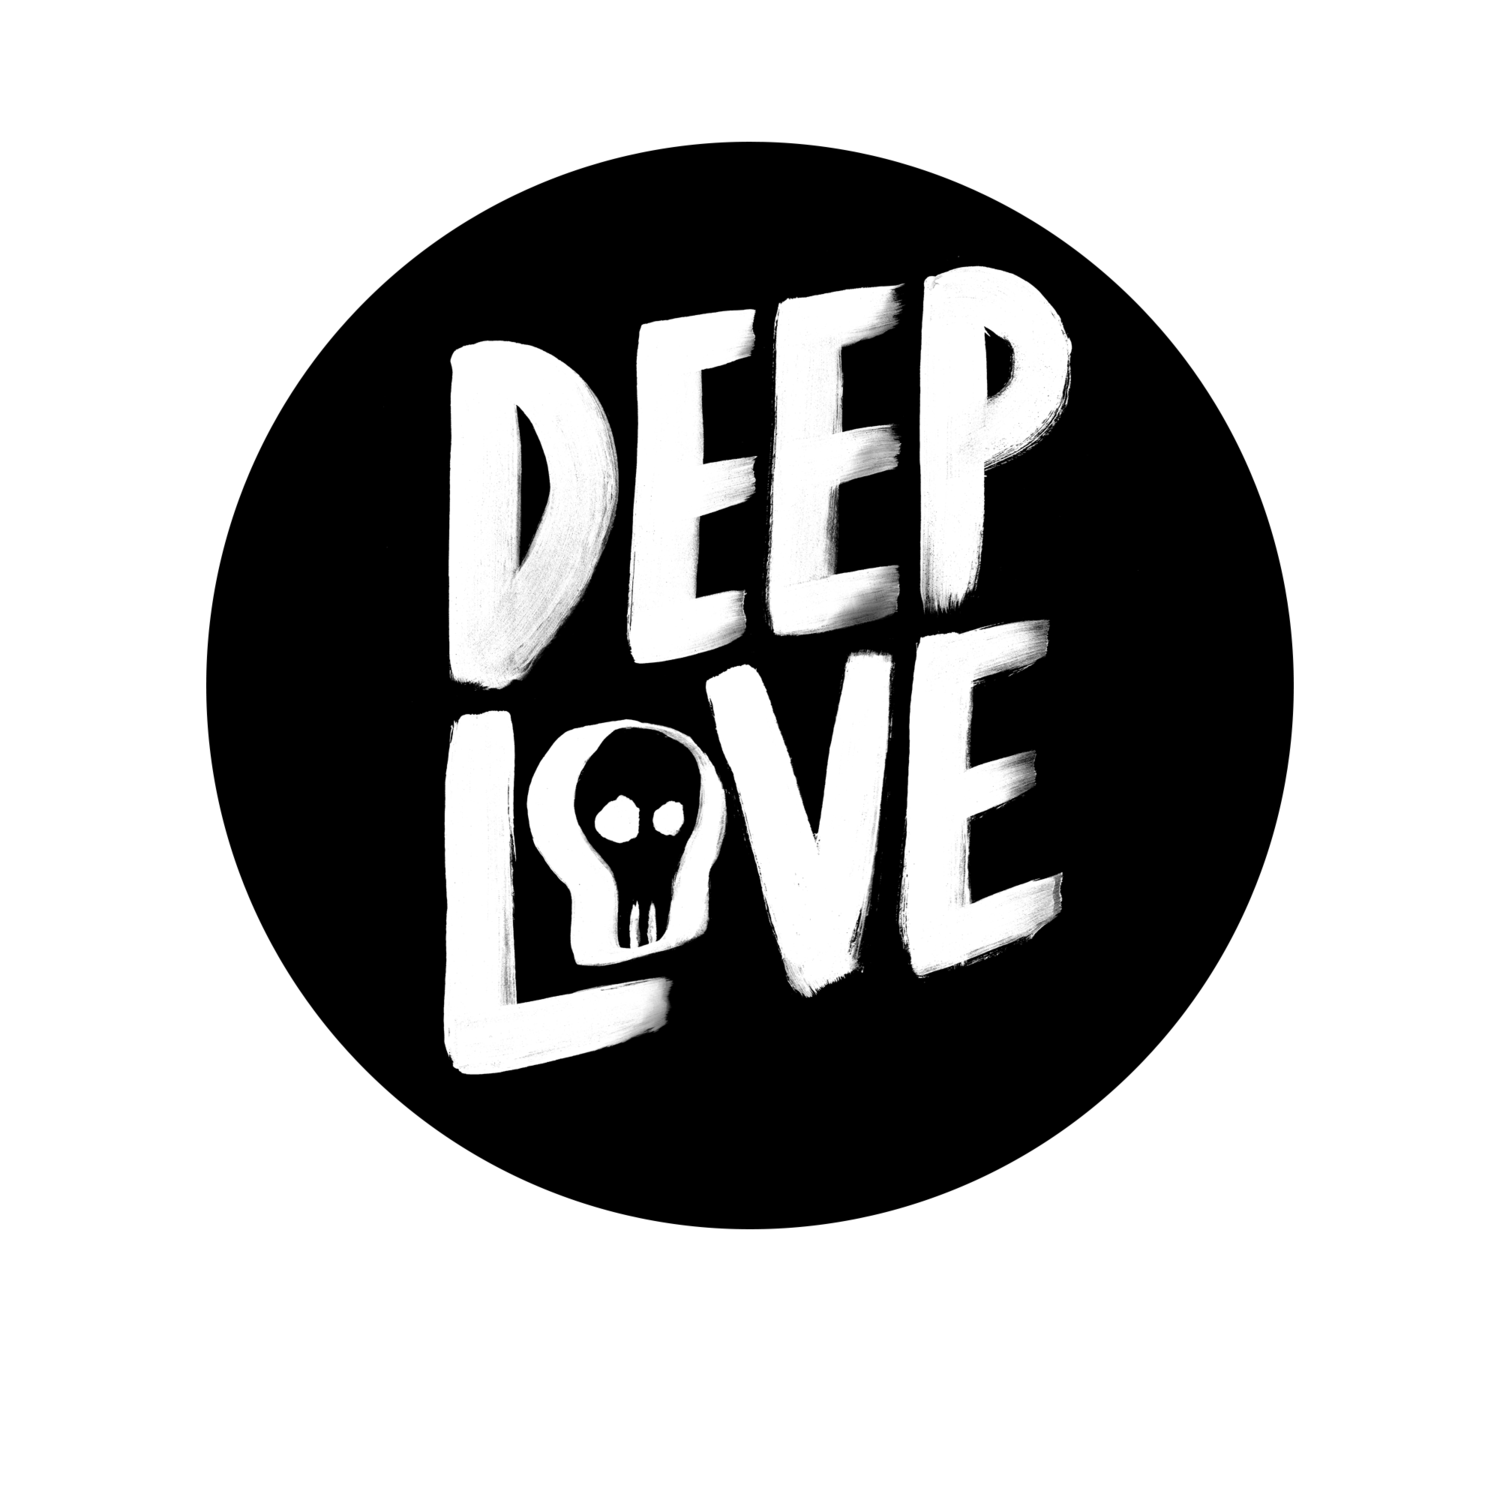 Deep Love